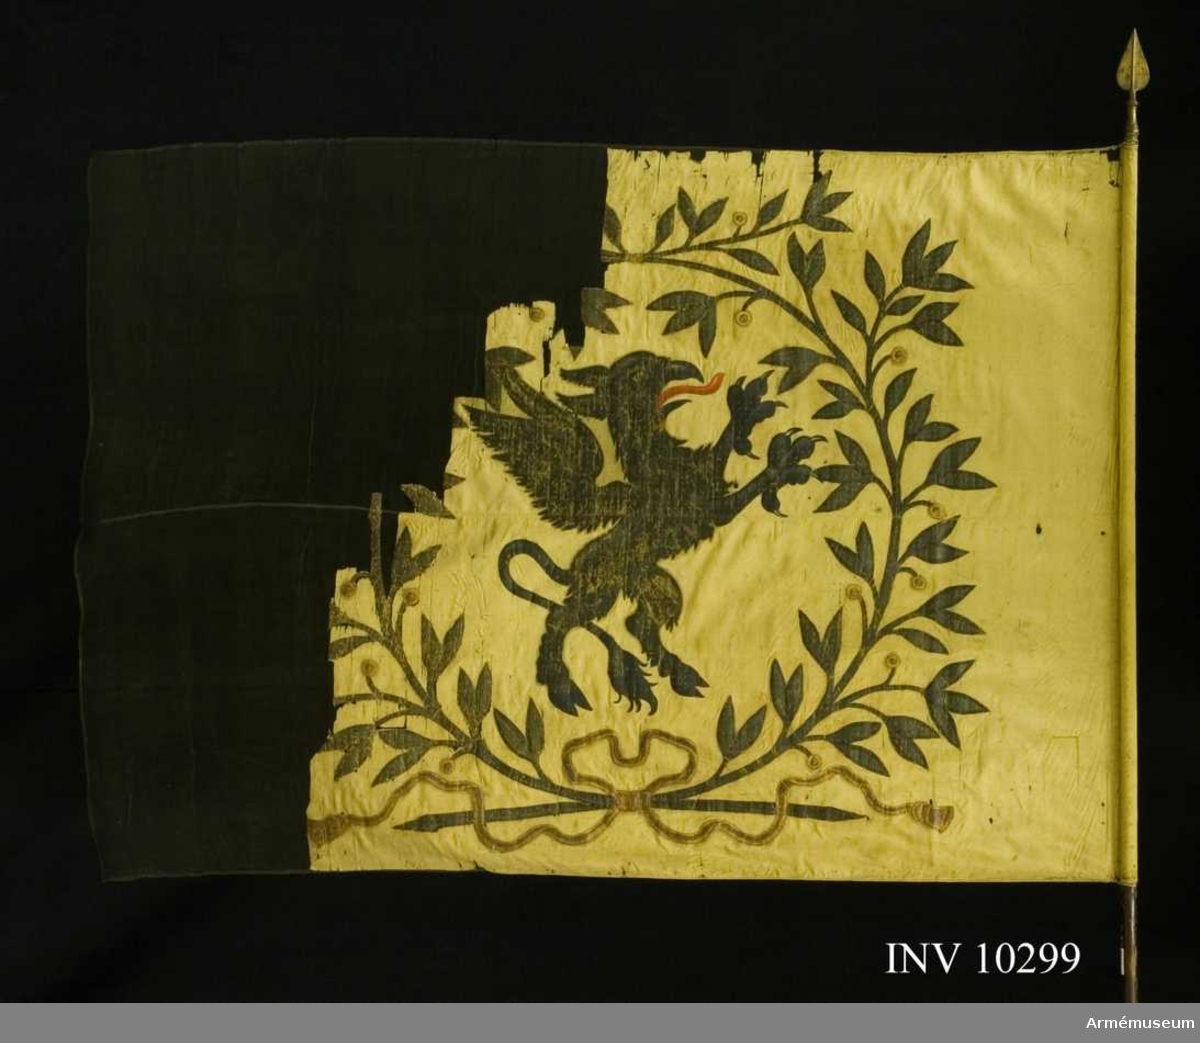 Grupp B I.
Fanduk av gul taft med målade emblem: Södermanlands sköldemärke en svart grip med röd tunga, omgivet av en krans av tvenne lagerkvistar i svart och grönt med bär i guld och rött, nedtill hopknutna med bandrosett i guld och rött. Fastspikad med gult sidenband och kupiga mässingsstift. Tillverkad 1730 av Johan Wijkman. Stång av furu, brun. Spets av förgylld mässing, holken med profilerade vulster. Bladet lansettliknande, förvaras i rullen.Tillstånd: Duken blekt och starkt fragmentarisk, övre och yttre delen saknas. De kvarvarande delarna insydda mellan crepelin.